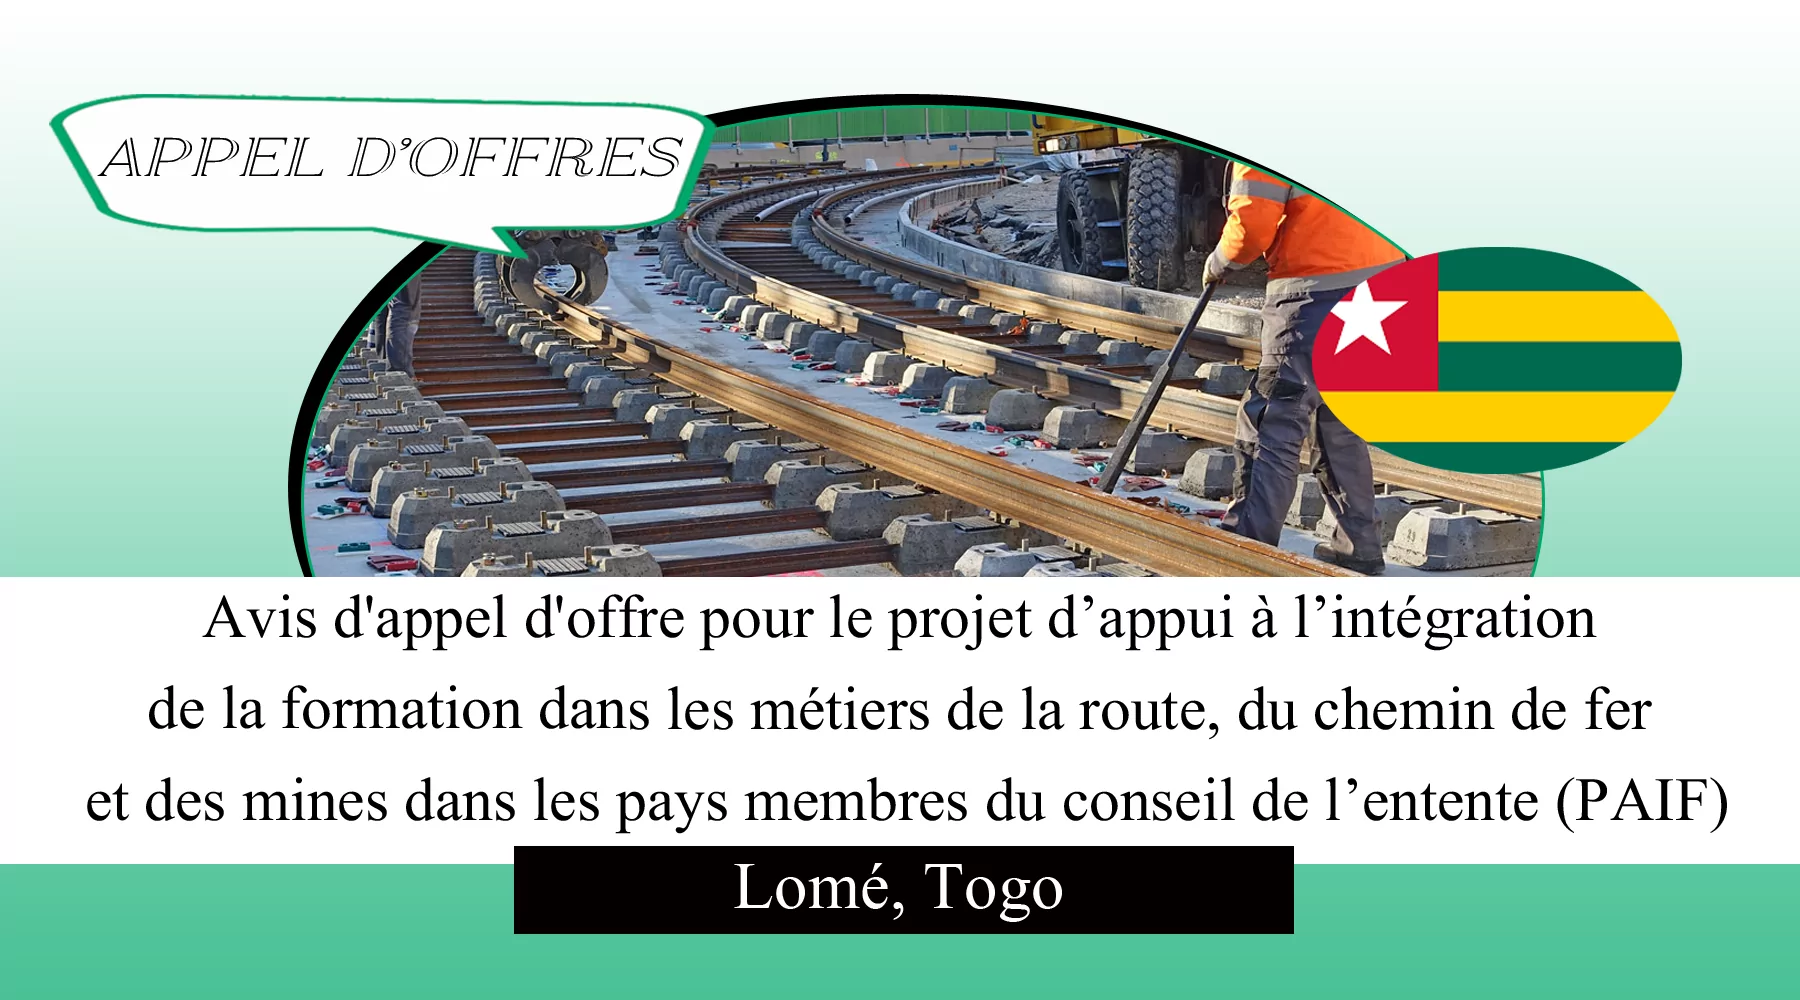 Avis d’appel d’offre pour le projet d’appui à l’intégration de la formation dans les métiers de la route, du chemin de fer et des mines dans les pays membres du conseil de l’entente (PAIF), Lomé, Togo